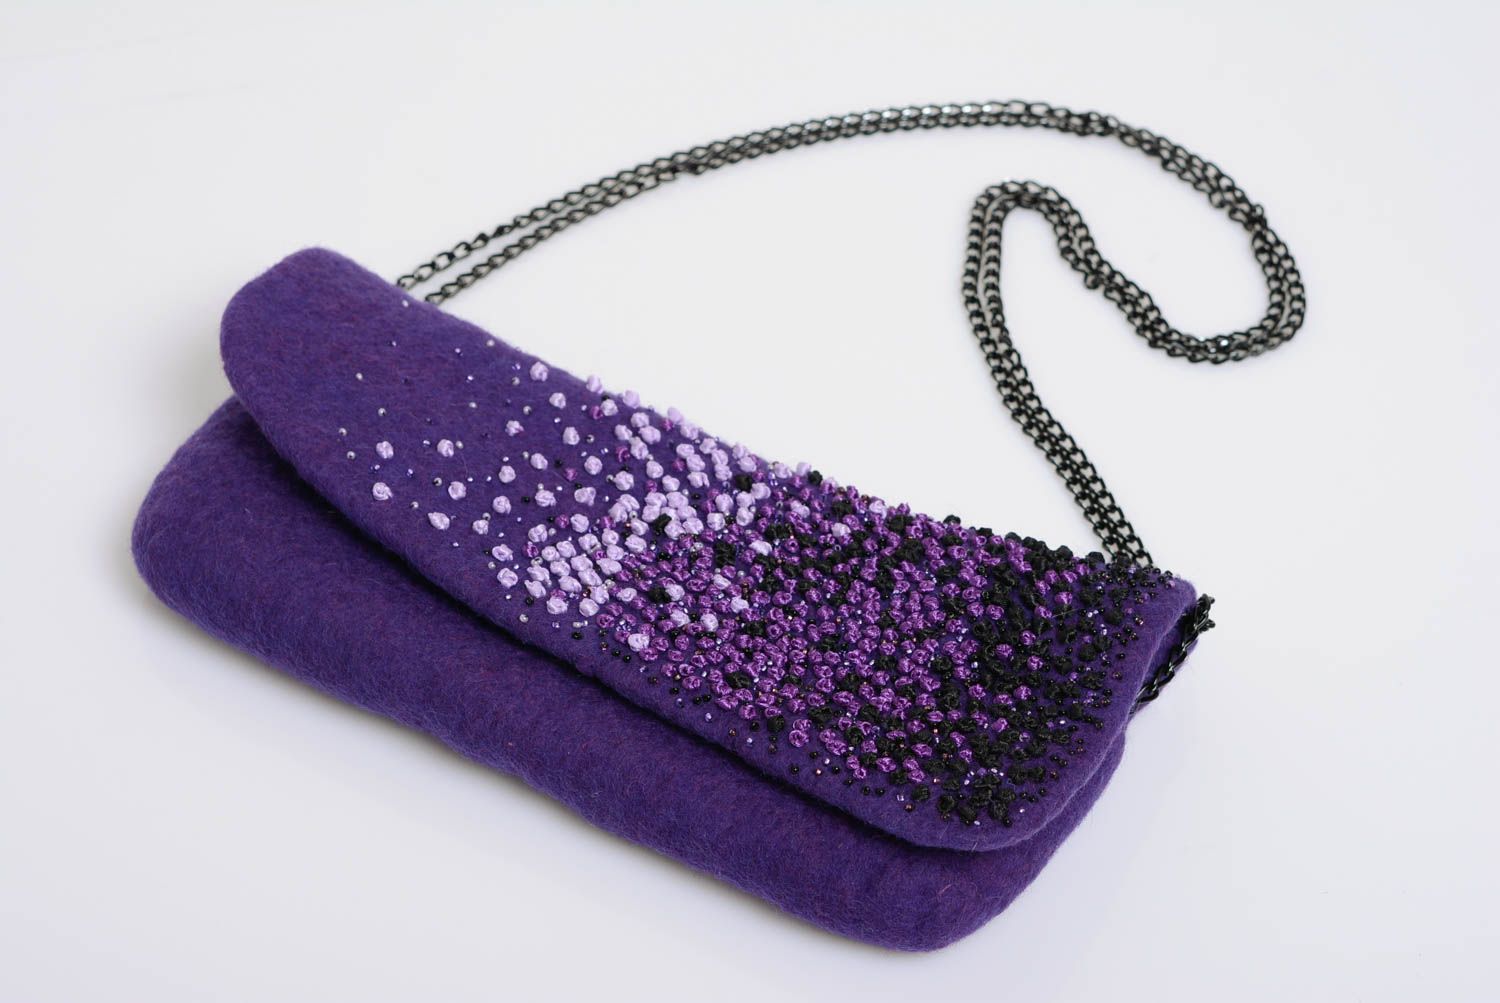 Sac pochette en laine feutrée violet fait main original sur chaîne métallique photo 1